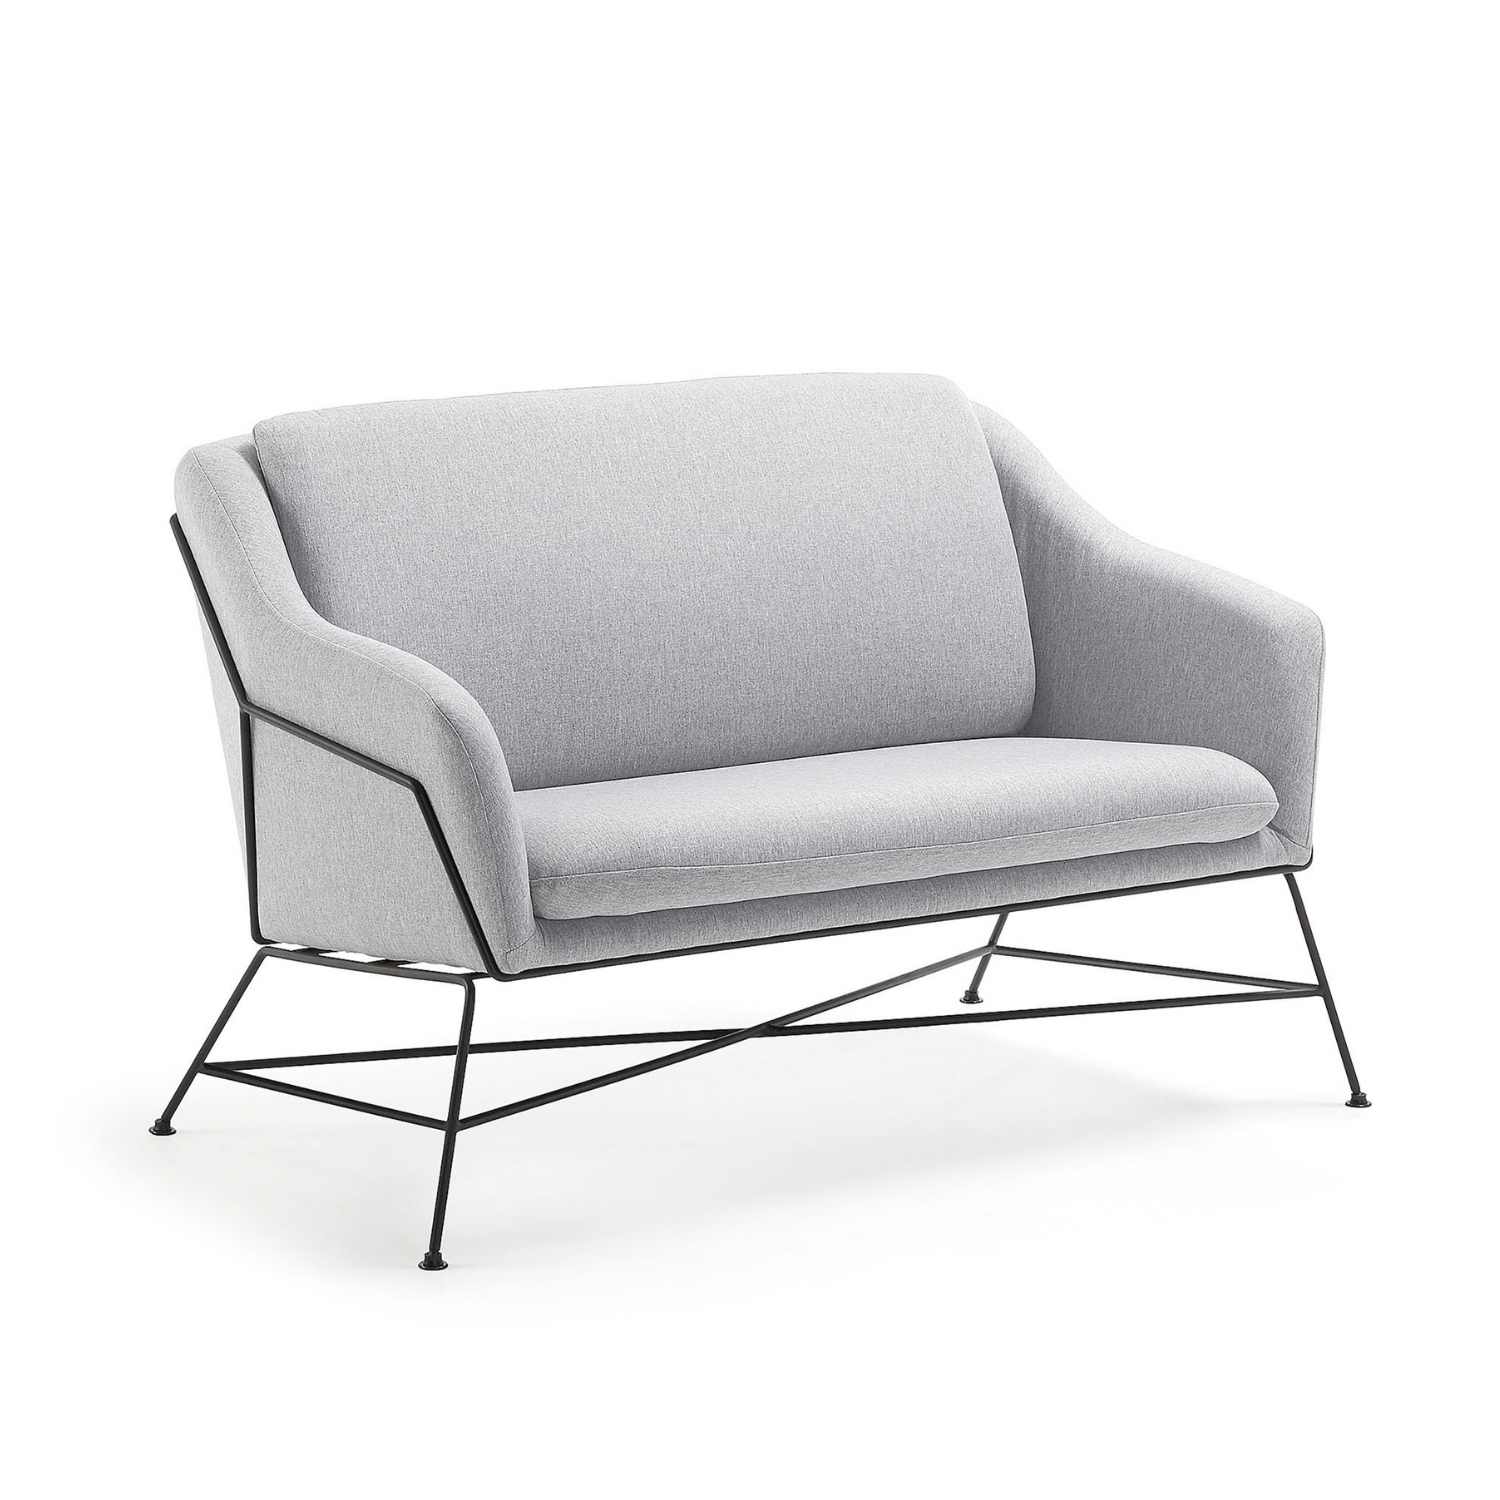 LAFORMA Brida sofa - lysegråt stof og sort metal, 2 pers.